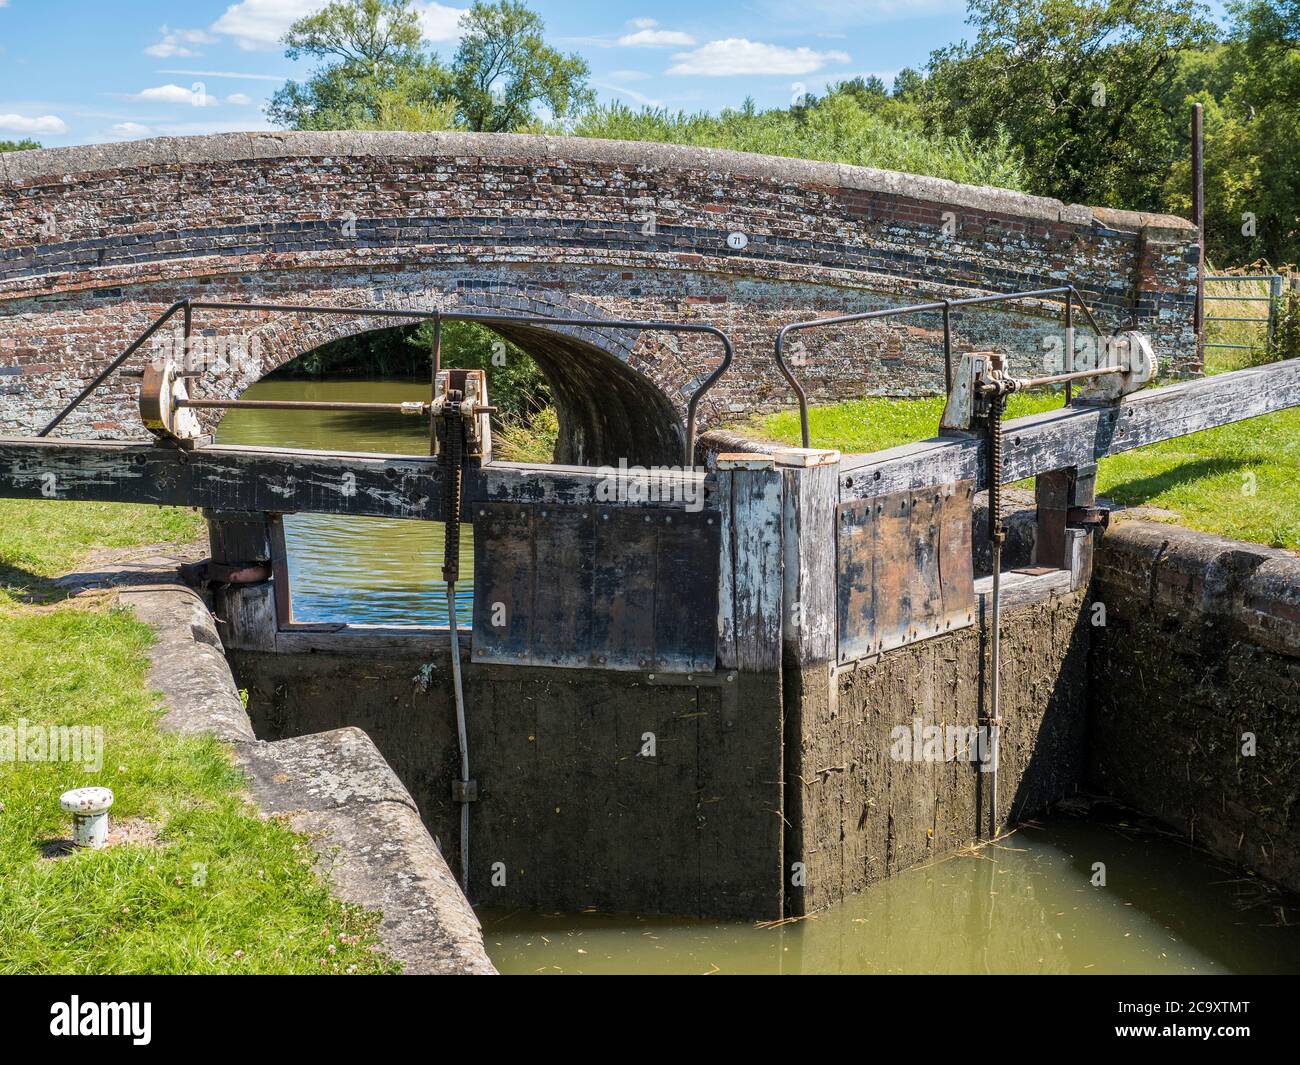 Drewitts Lock No 79, Kennet and Avon Canal, Newbury, Berkshire, England, UK, GB. Stock Photo